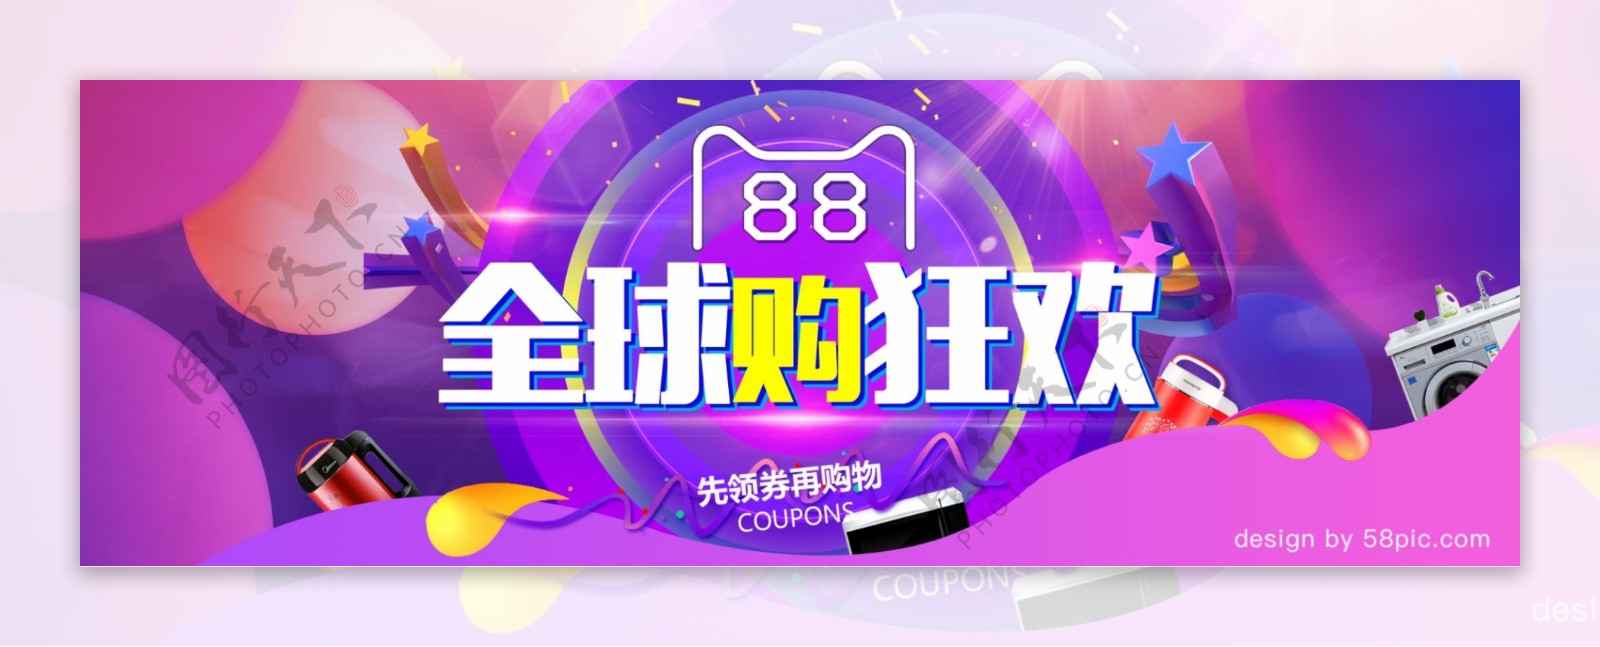 电商淘宝88全球购狂欢活动海报banner